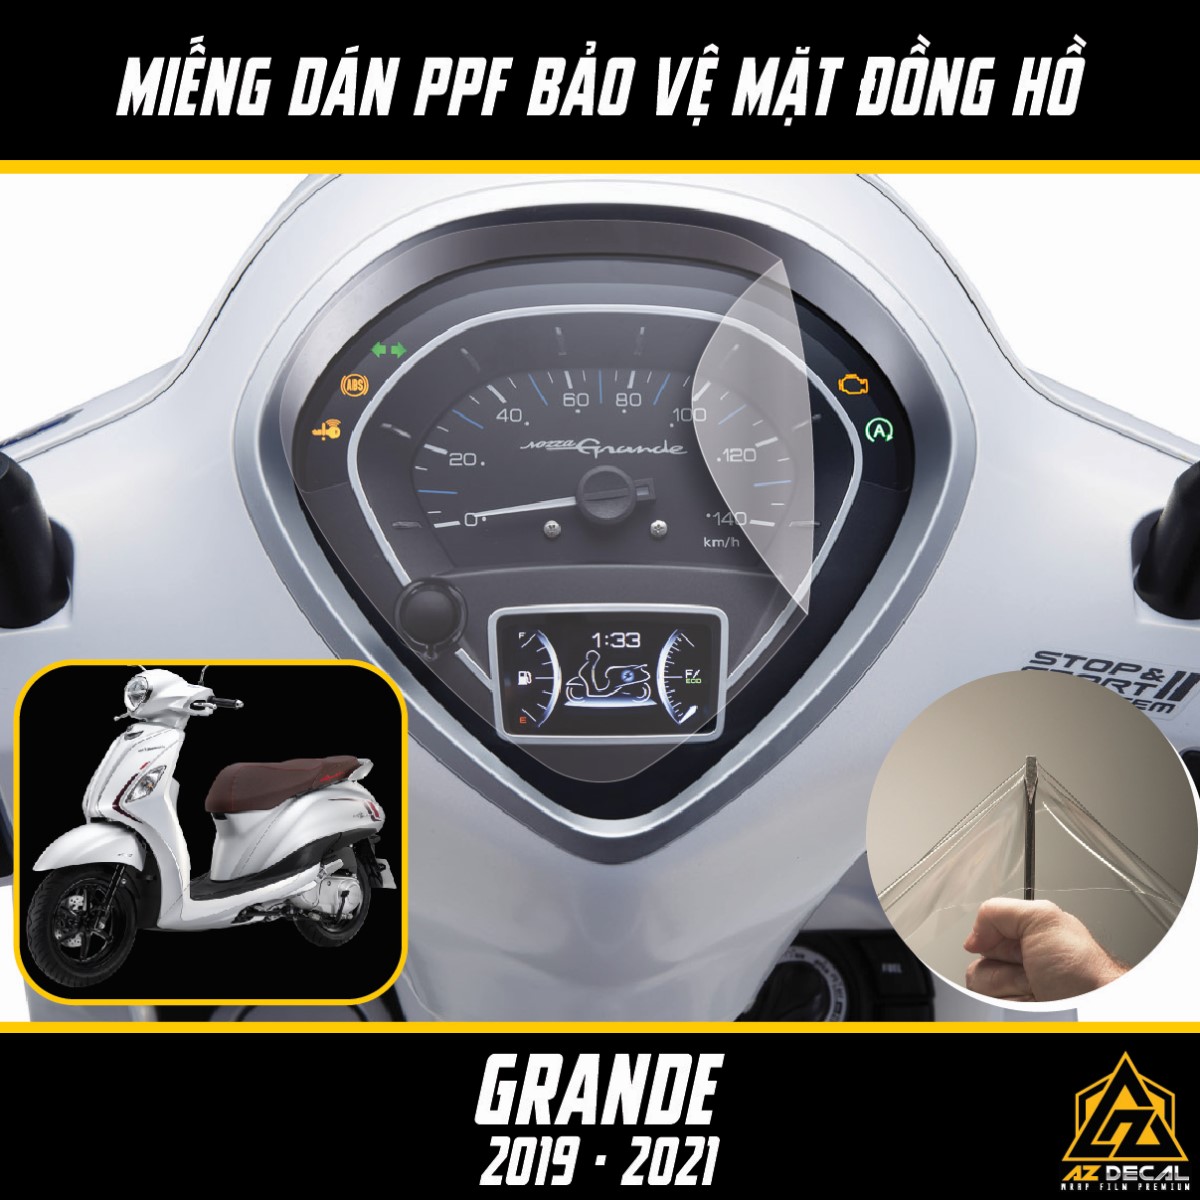 Chi tiết Yamaha Grande Hybrid giá từ 455 triệu đồng tại Việt Nam